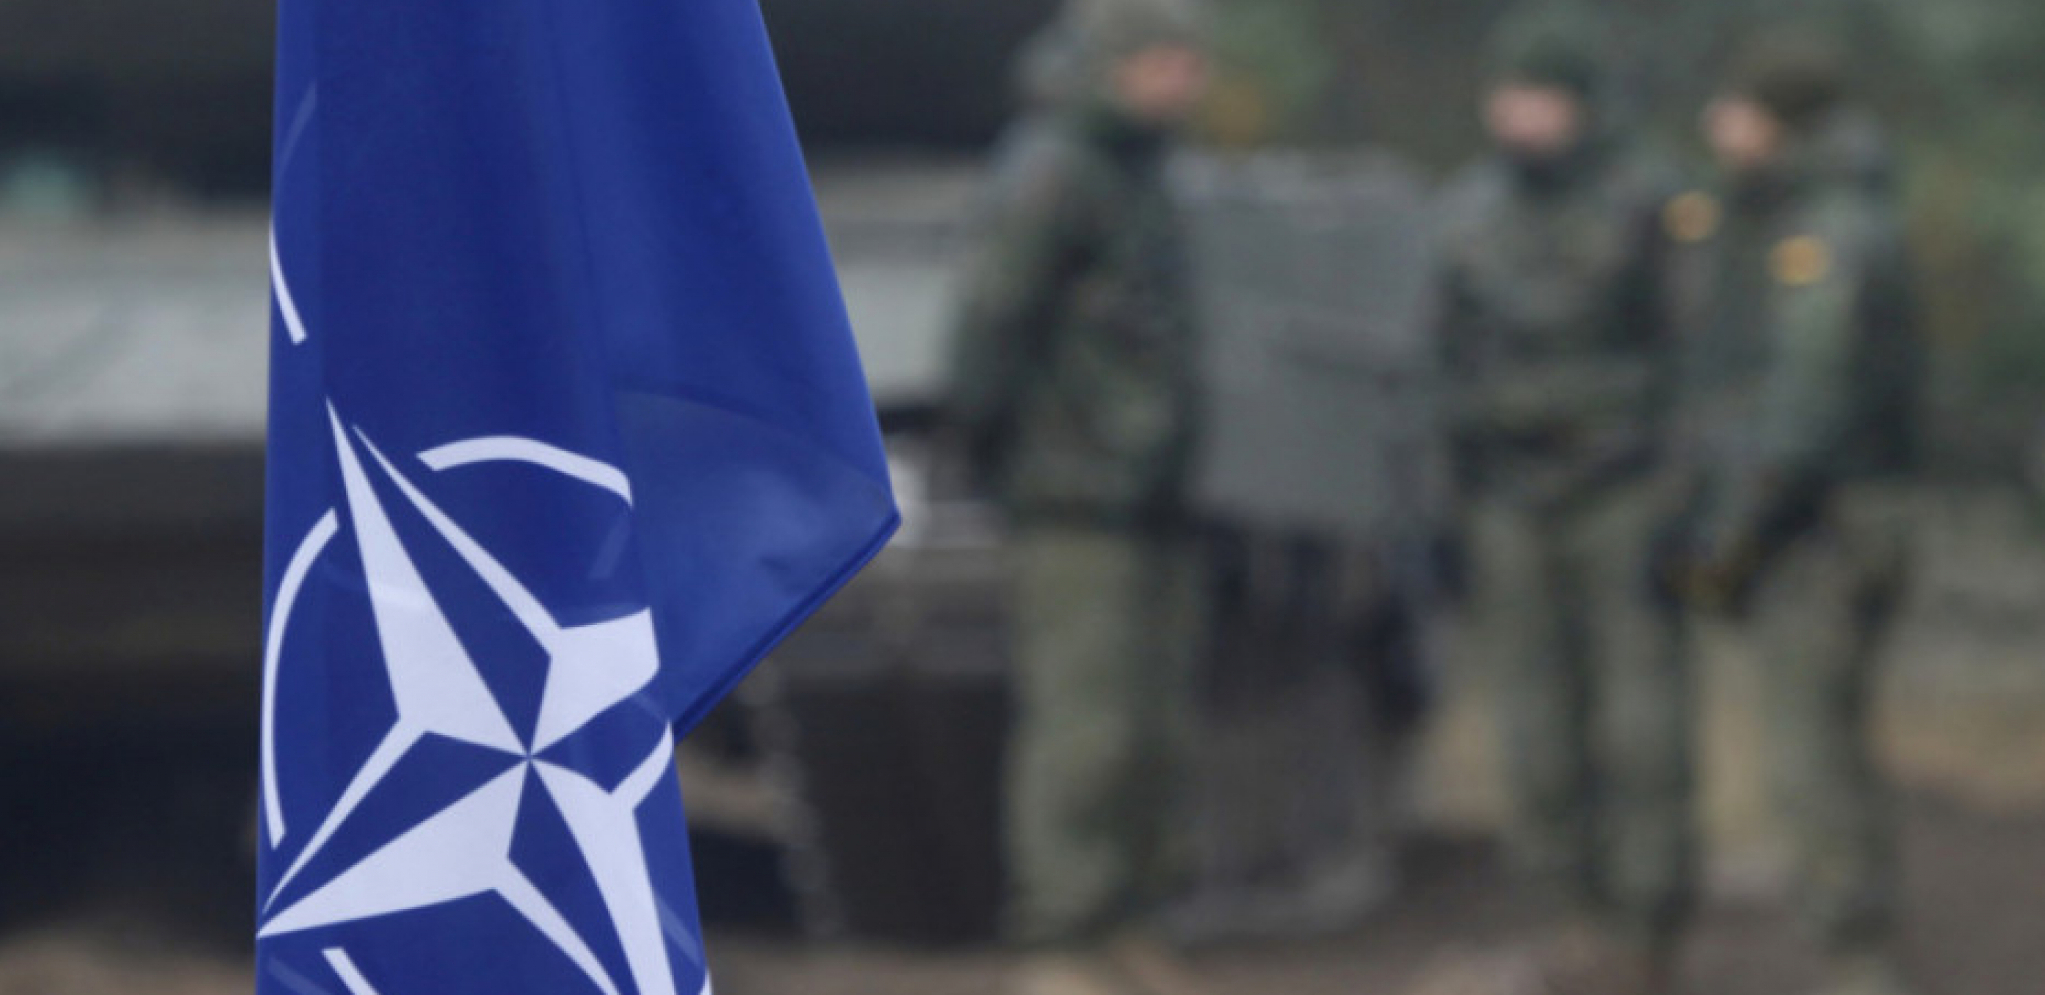 STRAH OD BLOKADE Velika promena zbog širenja NATO pakta